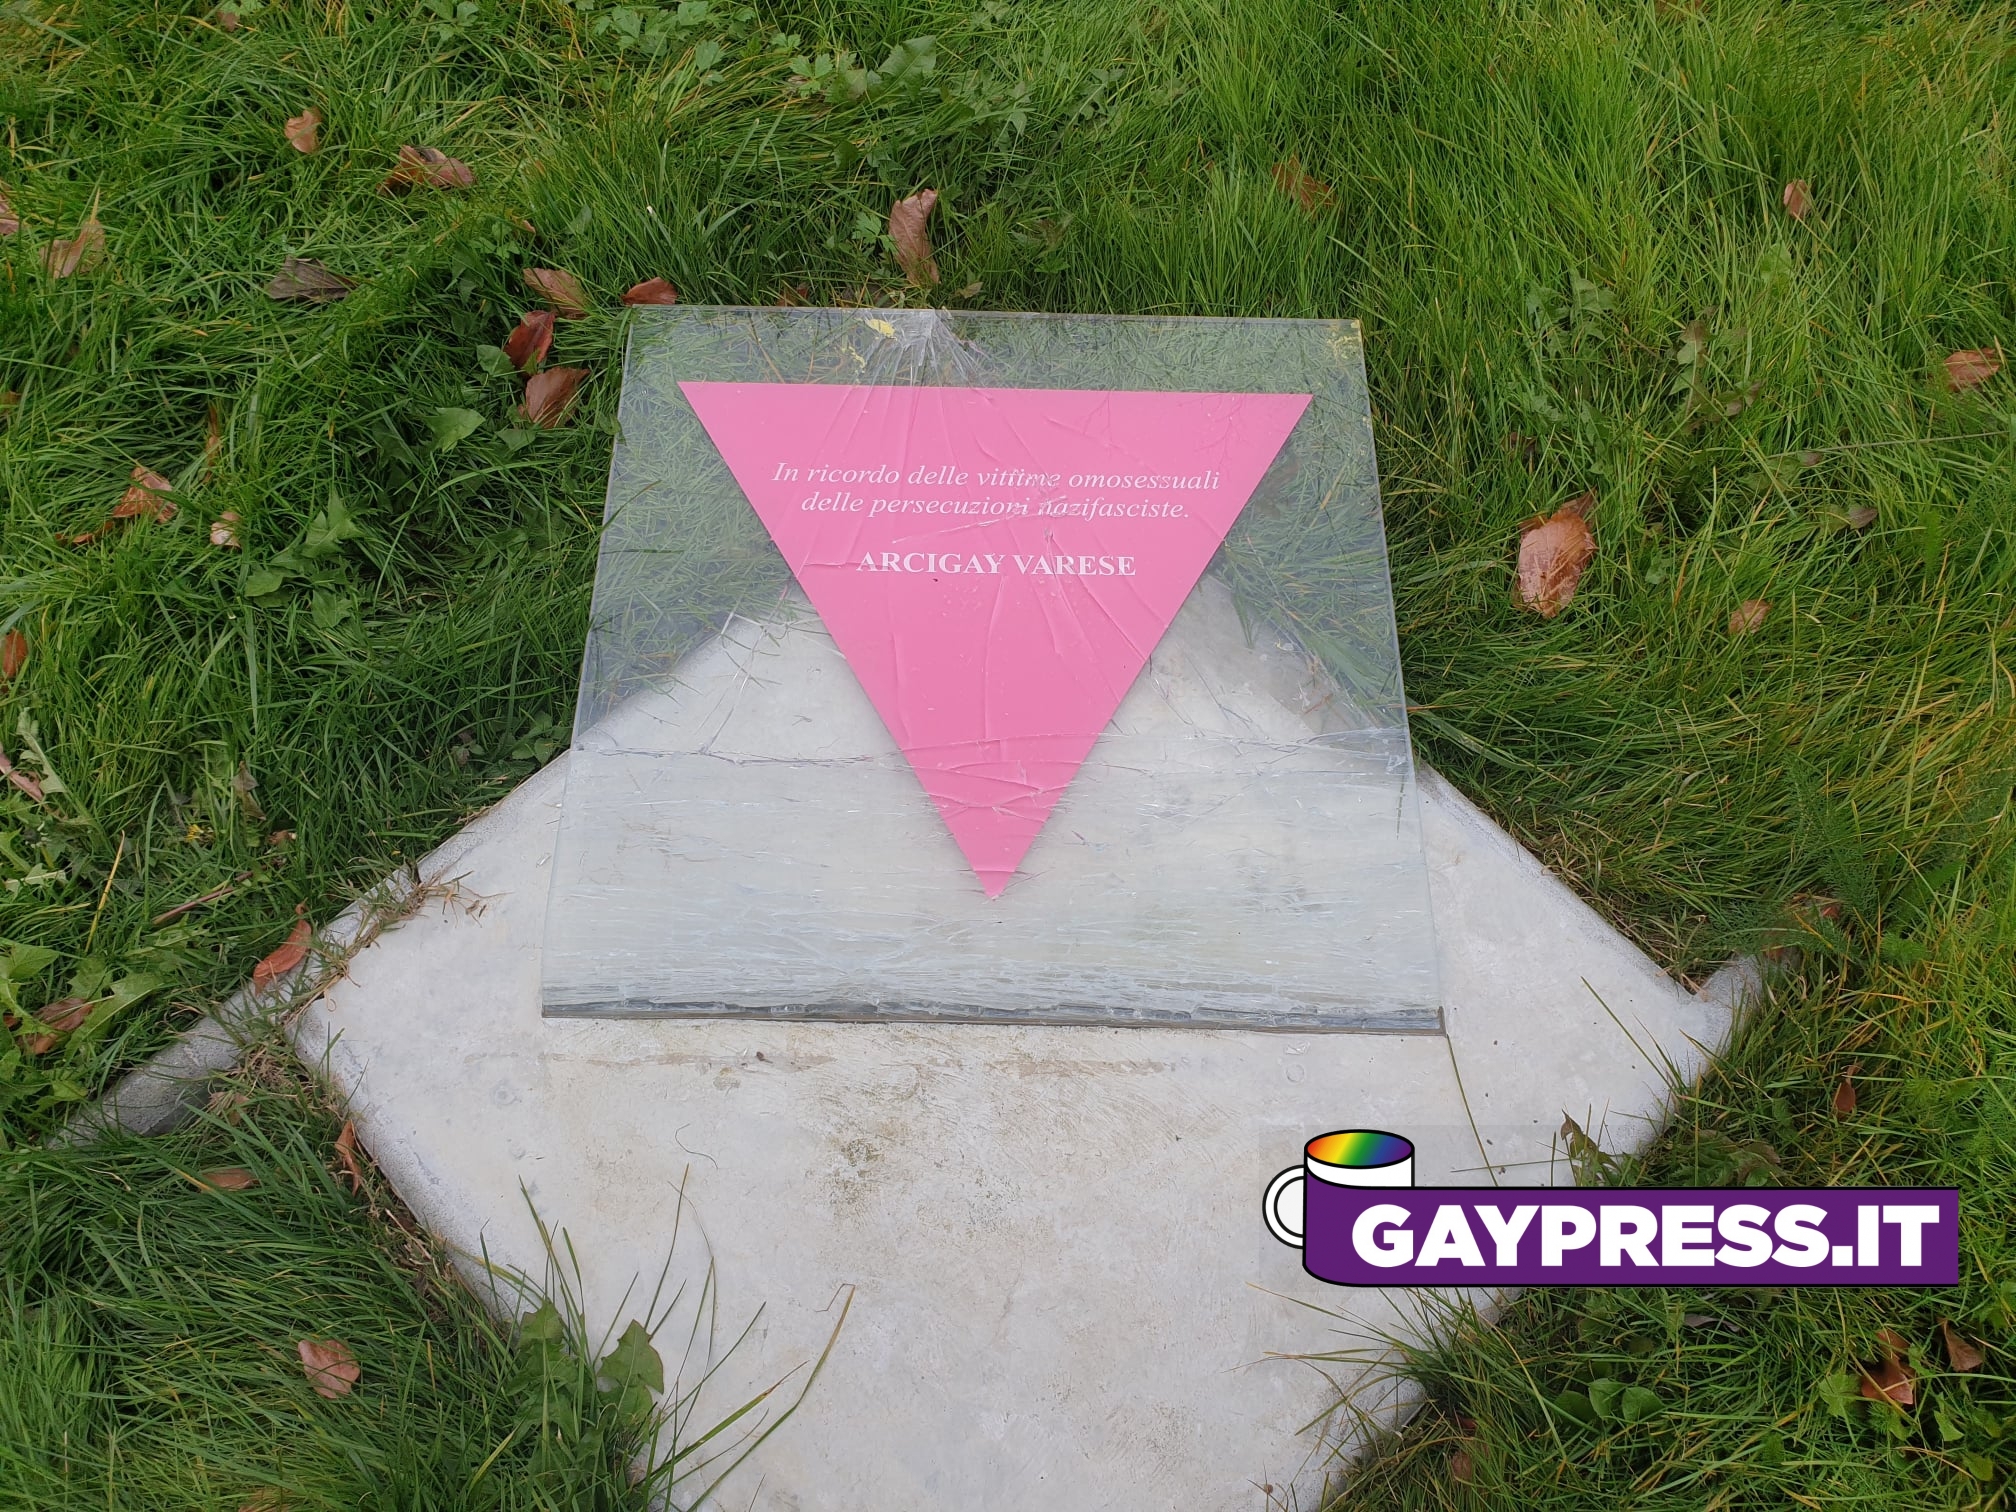 Vandalizzata a Varese la targa per commemorare le vittime omosessuali durante il dominio nazifascista